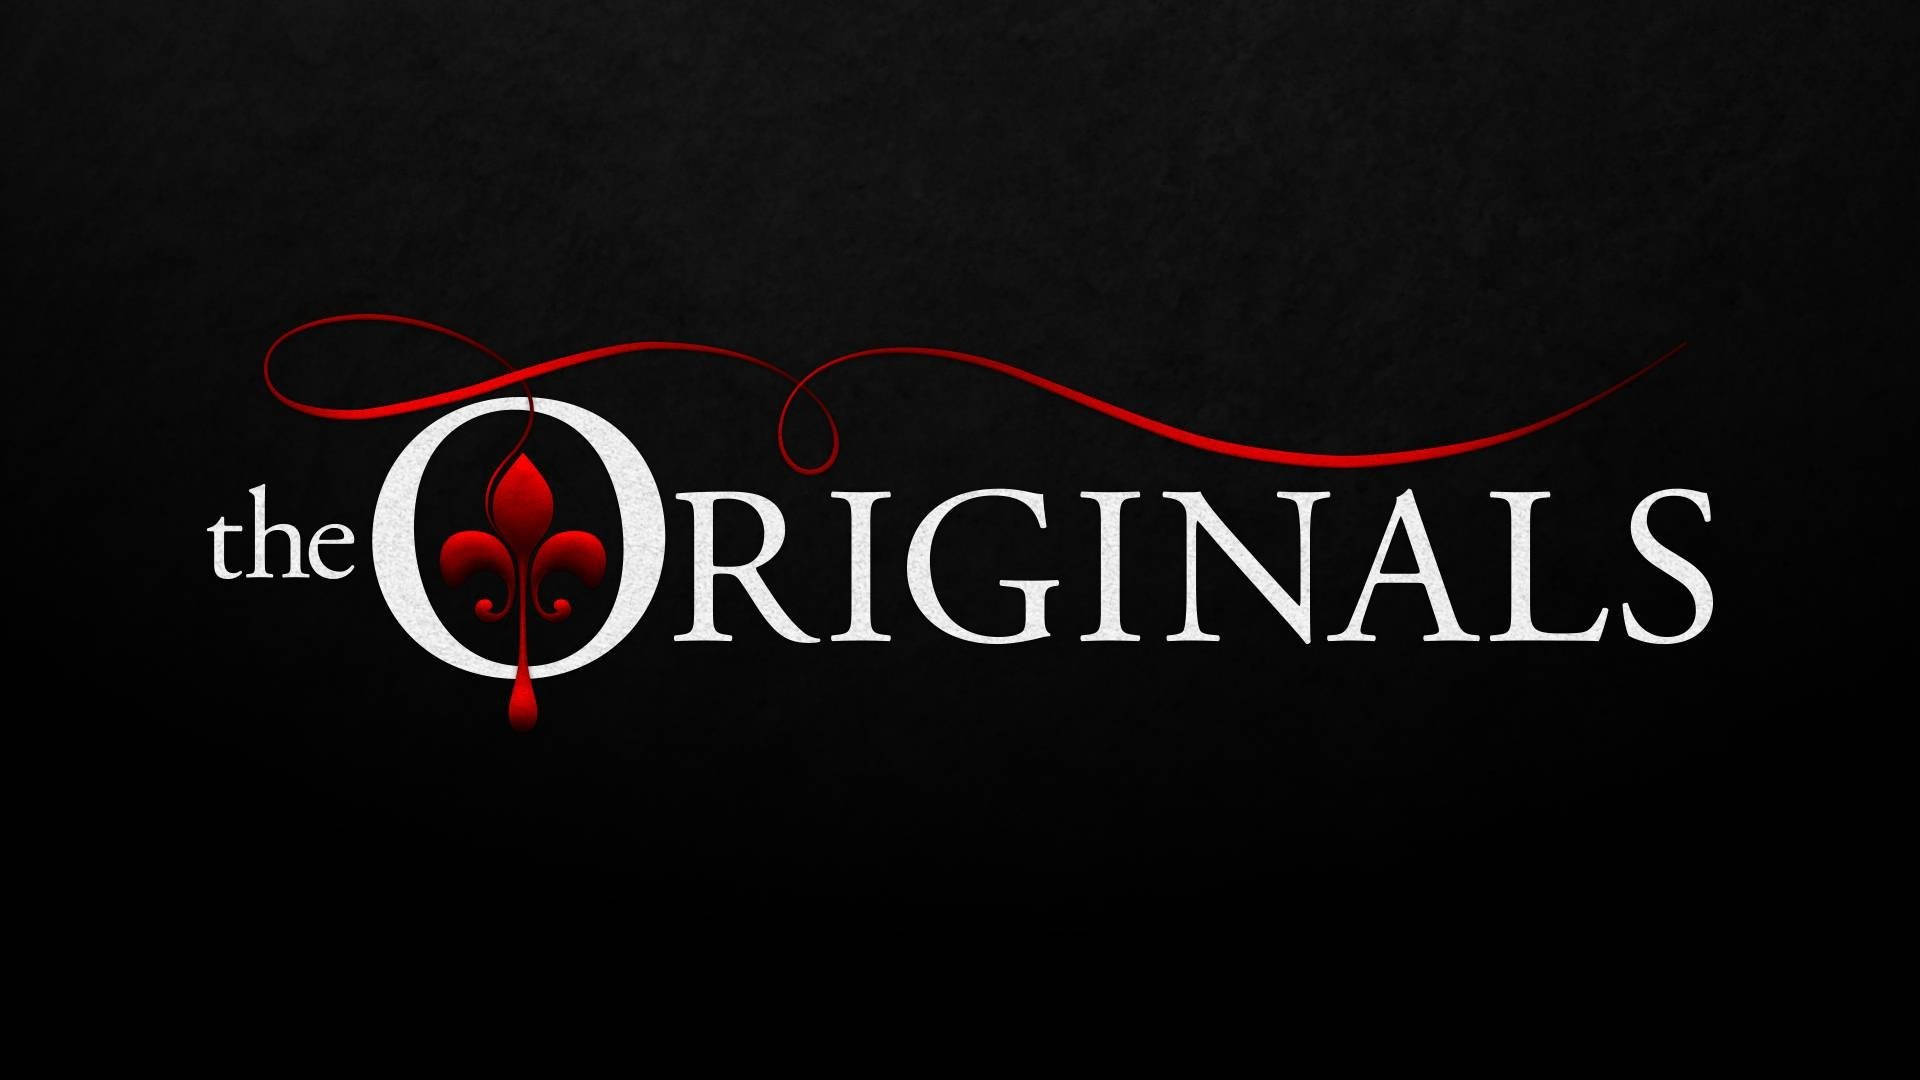 The Originals Title Logo Wallpaper